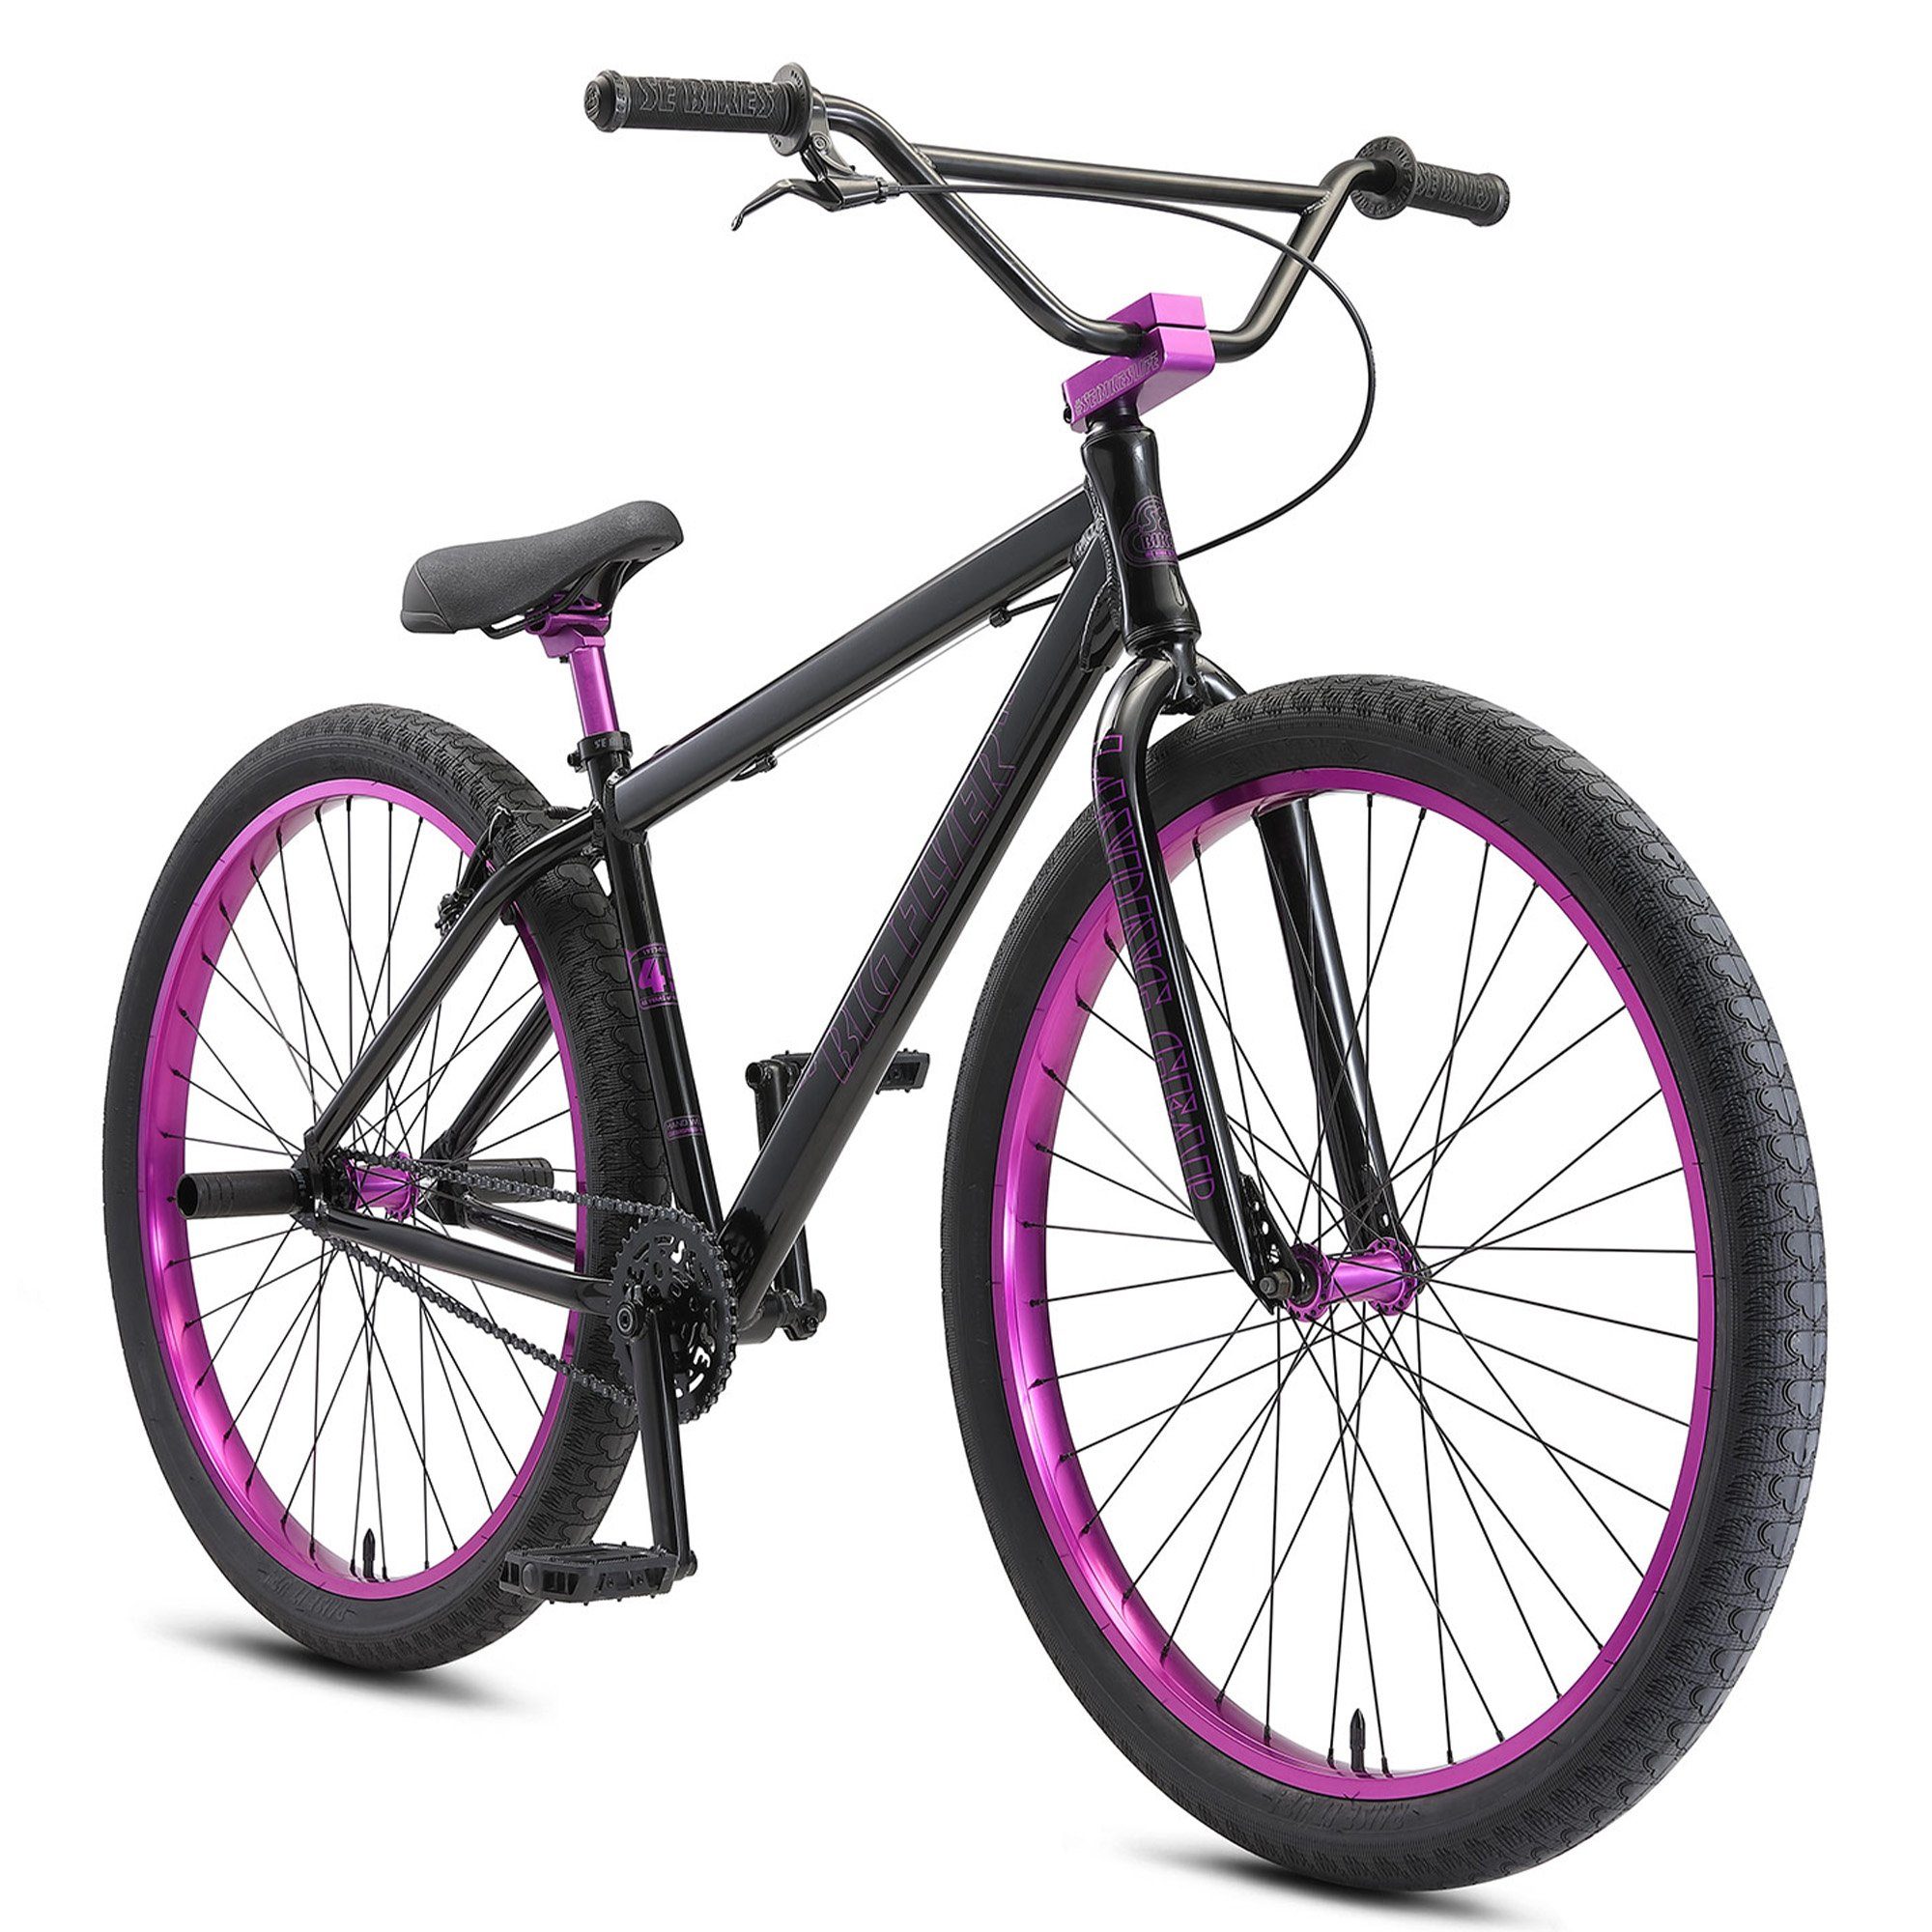 SE Bikes Mountainbike Big Erwachsene Fahrrad BMX Gang, 165cm ab Bike Schaltung, Jugendliche 1 HD, black Stuntbike ohne Wheelie Flyer Rad stealth mode